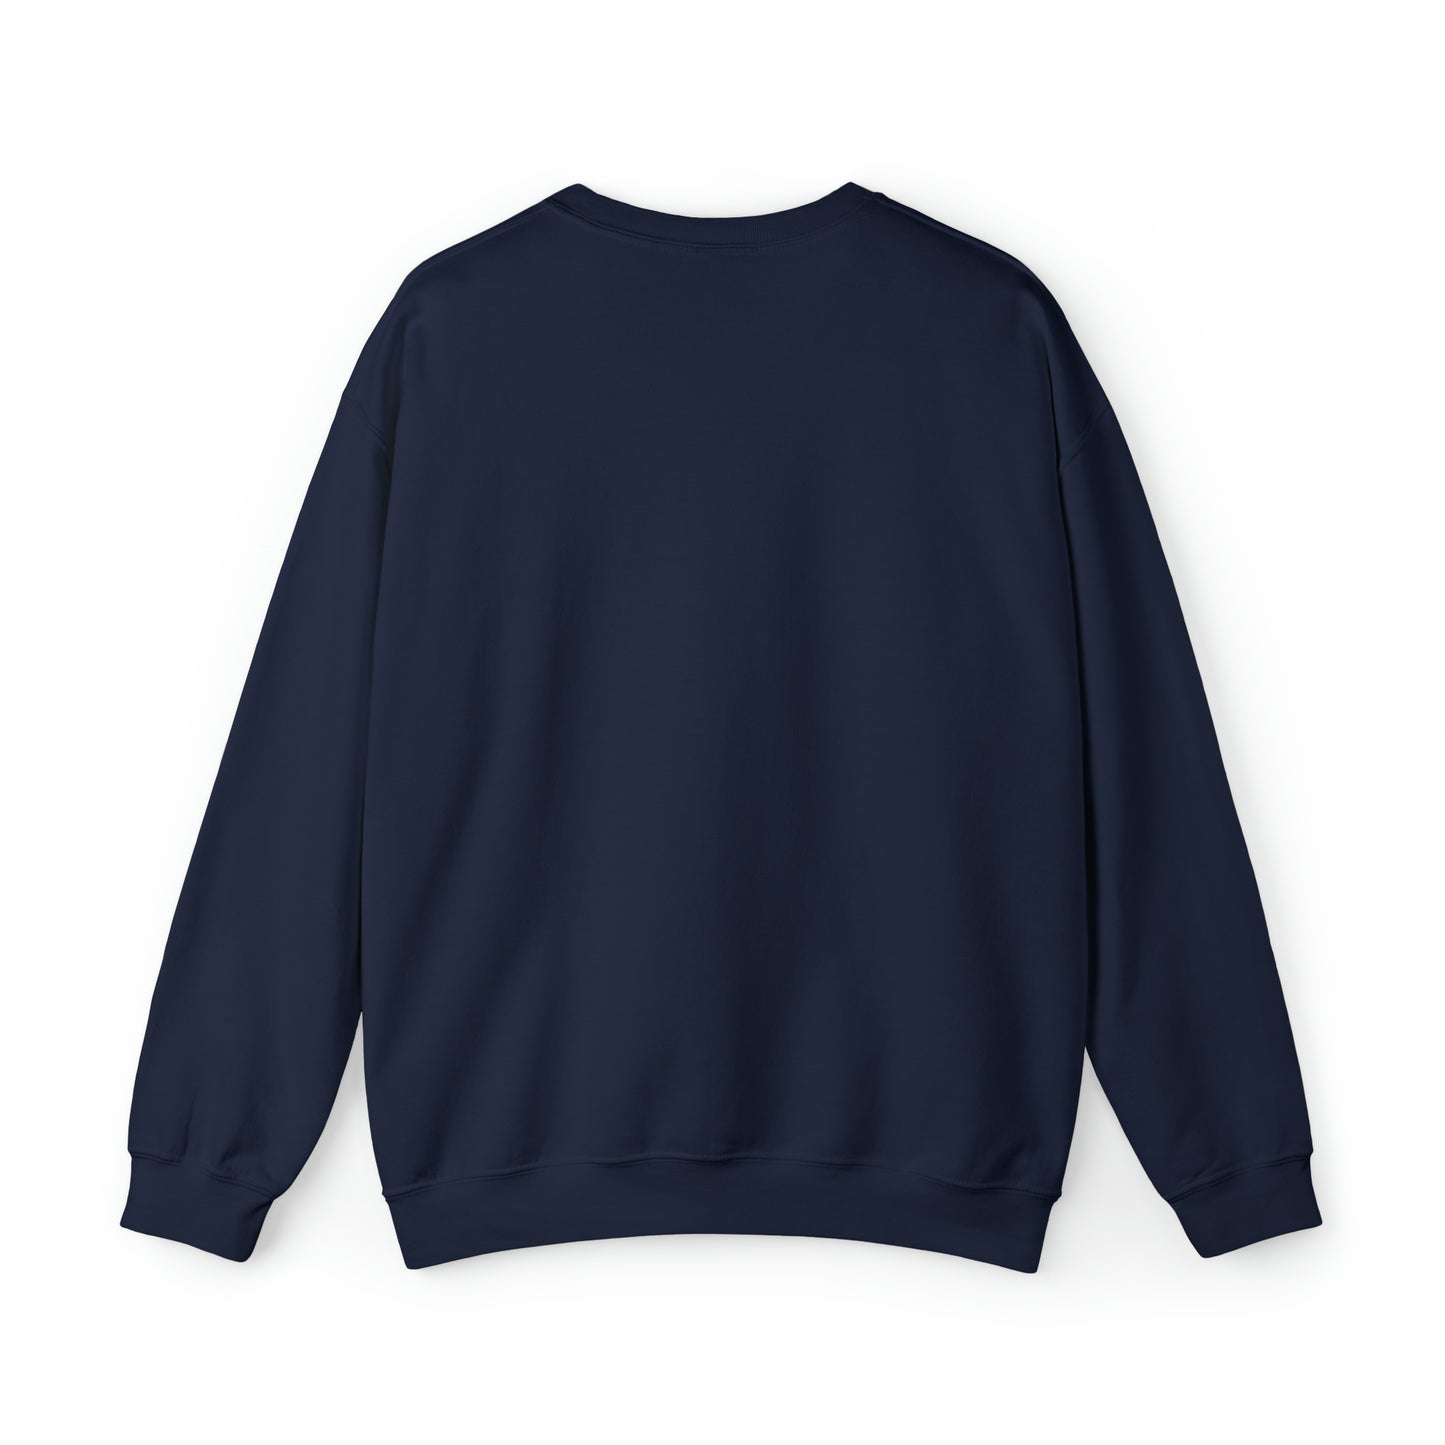 MOY CREWNECK TEMPLATE - Adult Unisex Heavy Blend™ Crewneck Sweatshirt